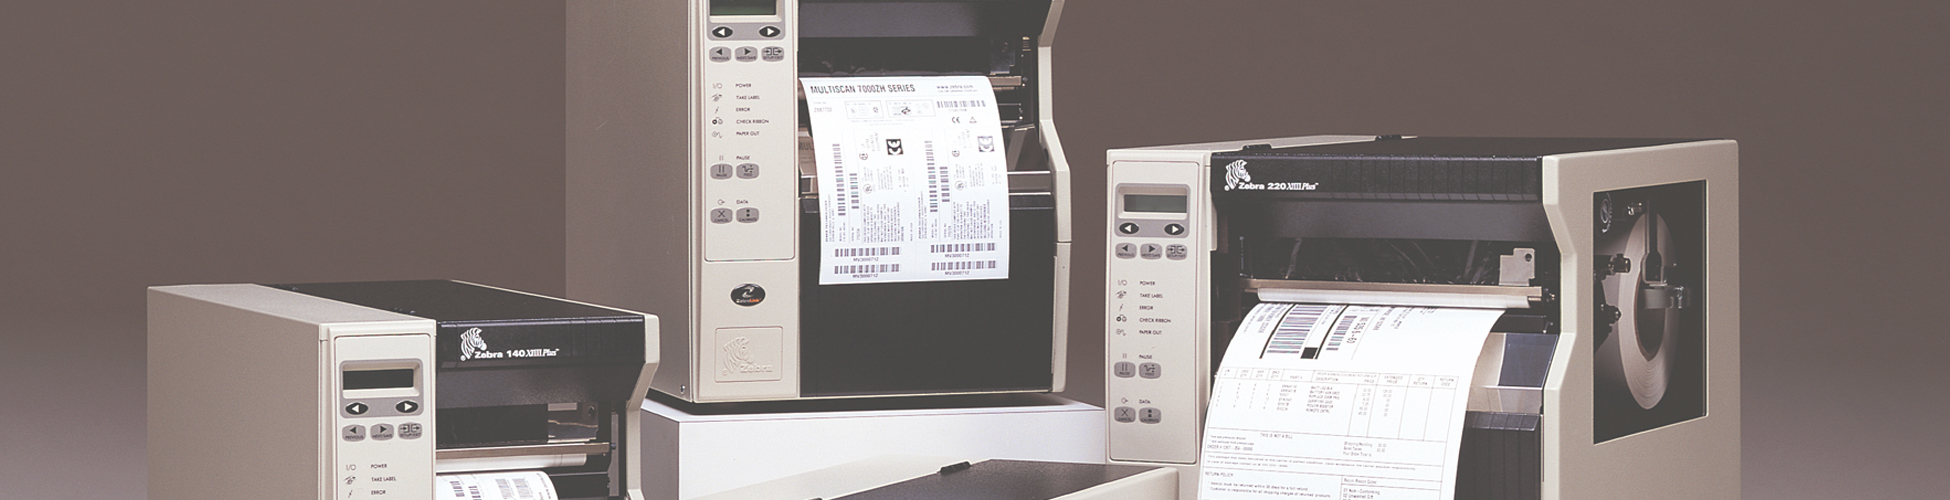 Impresora de Mesa Zebra HC100